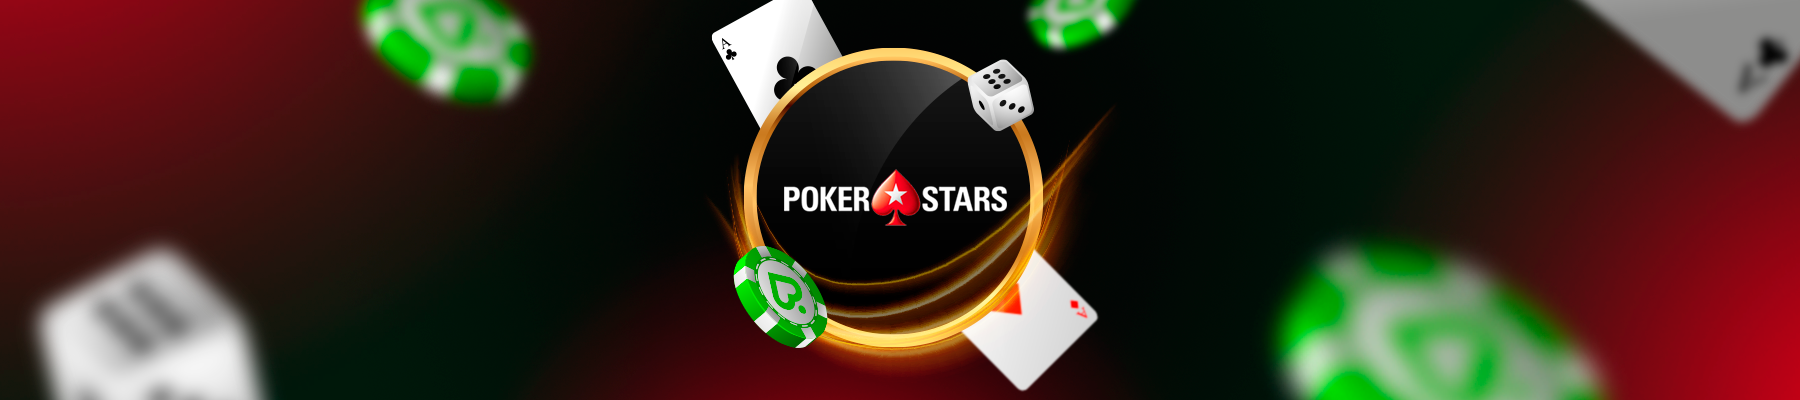 Обзор проверенного известного рума PokerStars